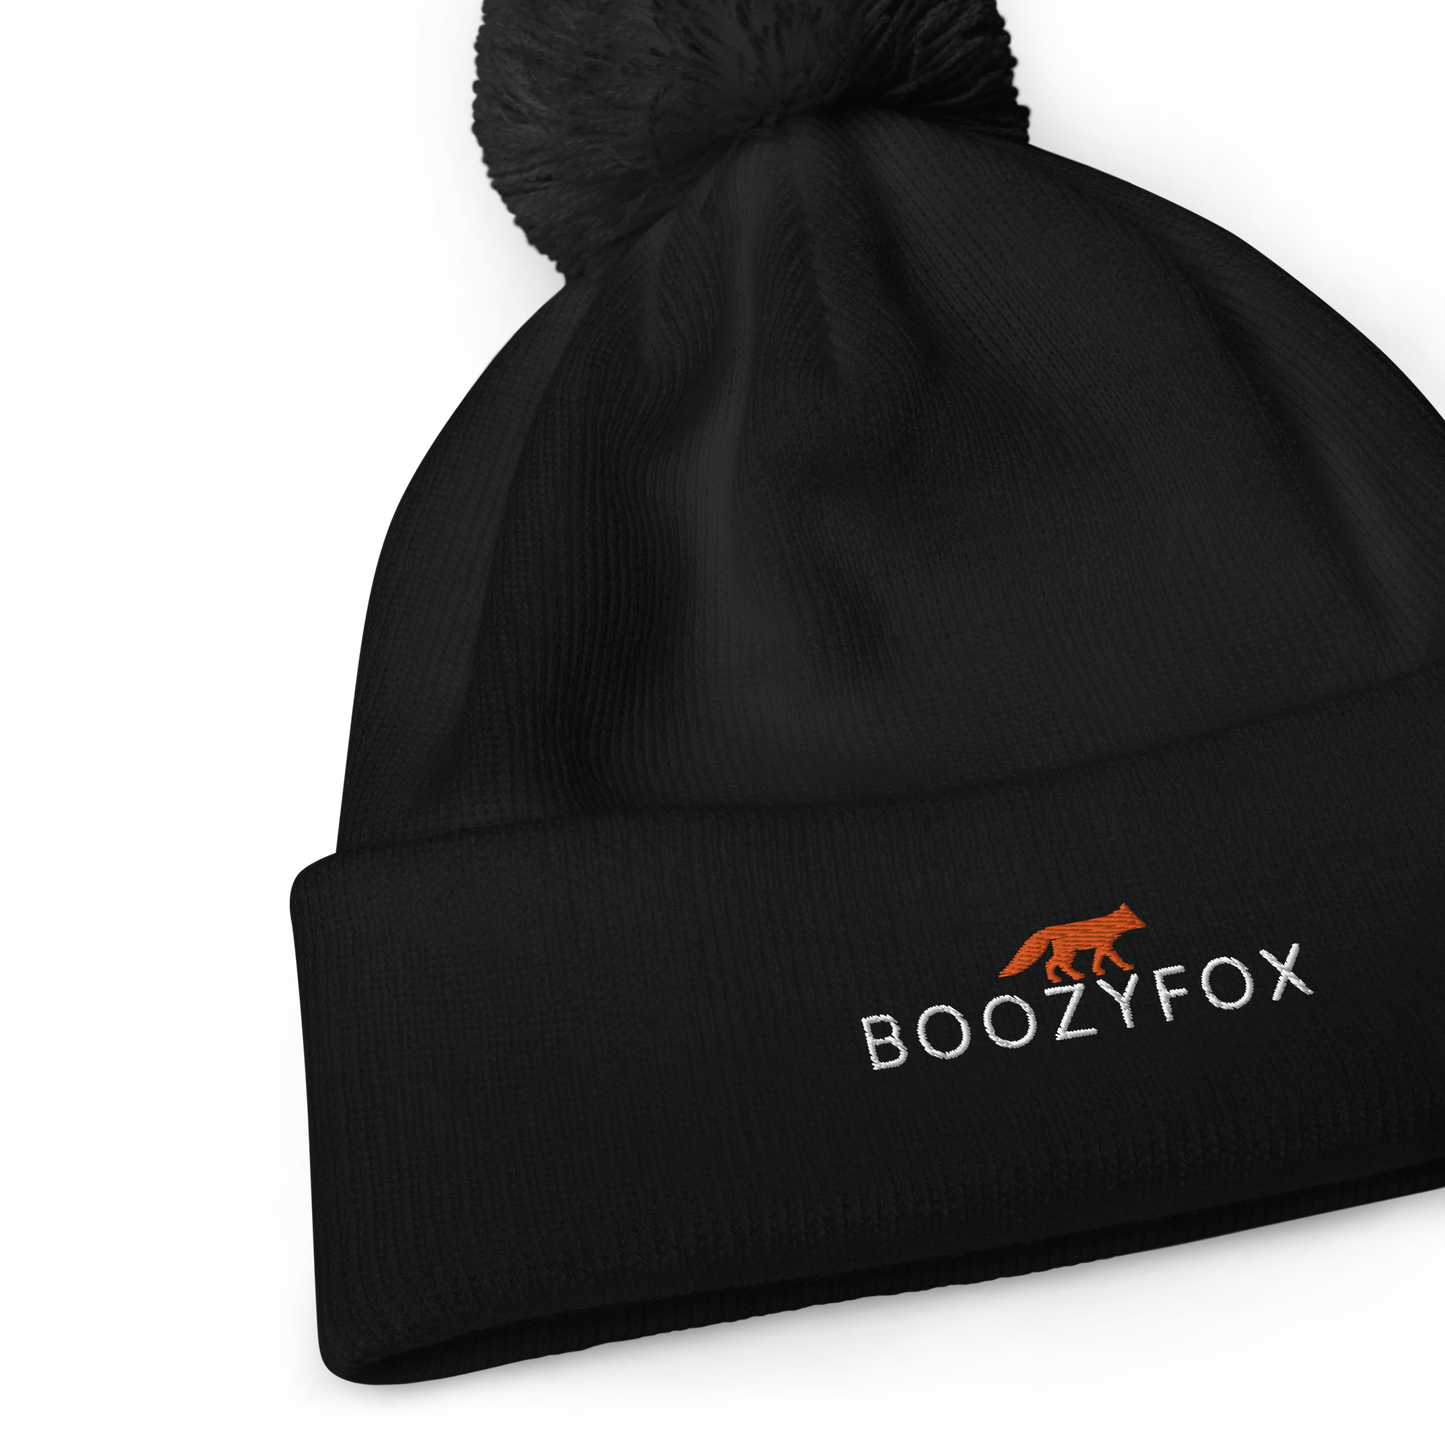 Front details of a Black Pom-Pom Beanie With An Embroidered Boozy Fox Logo On Fold - Shop Pom-Pom Beanies Online - Boozy Fox